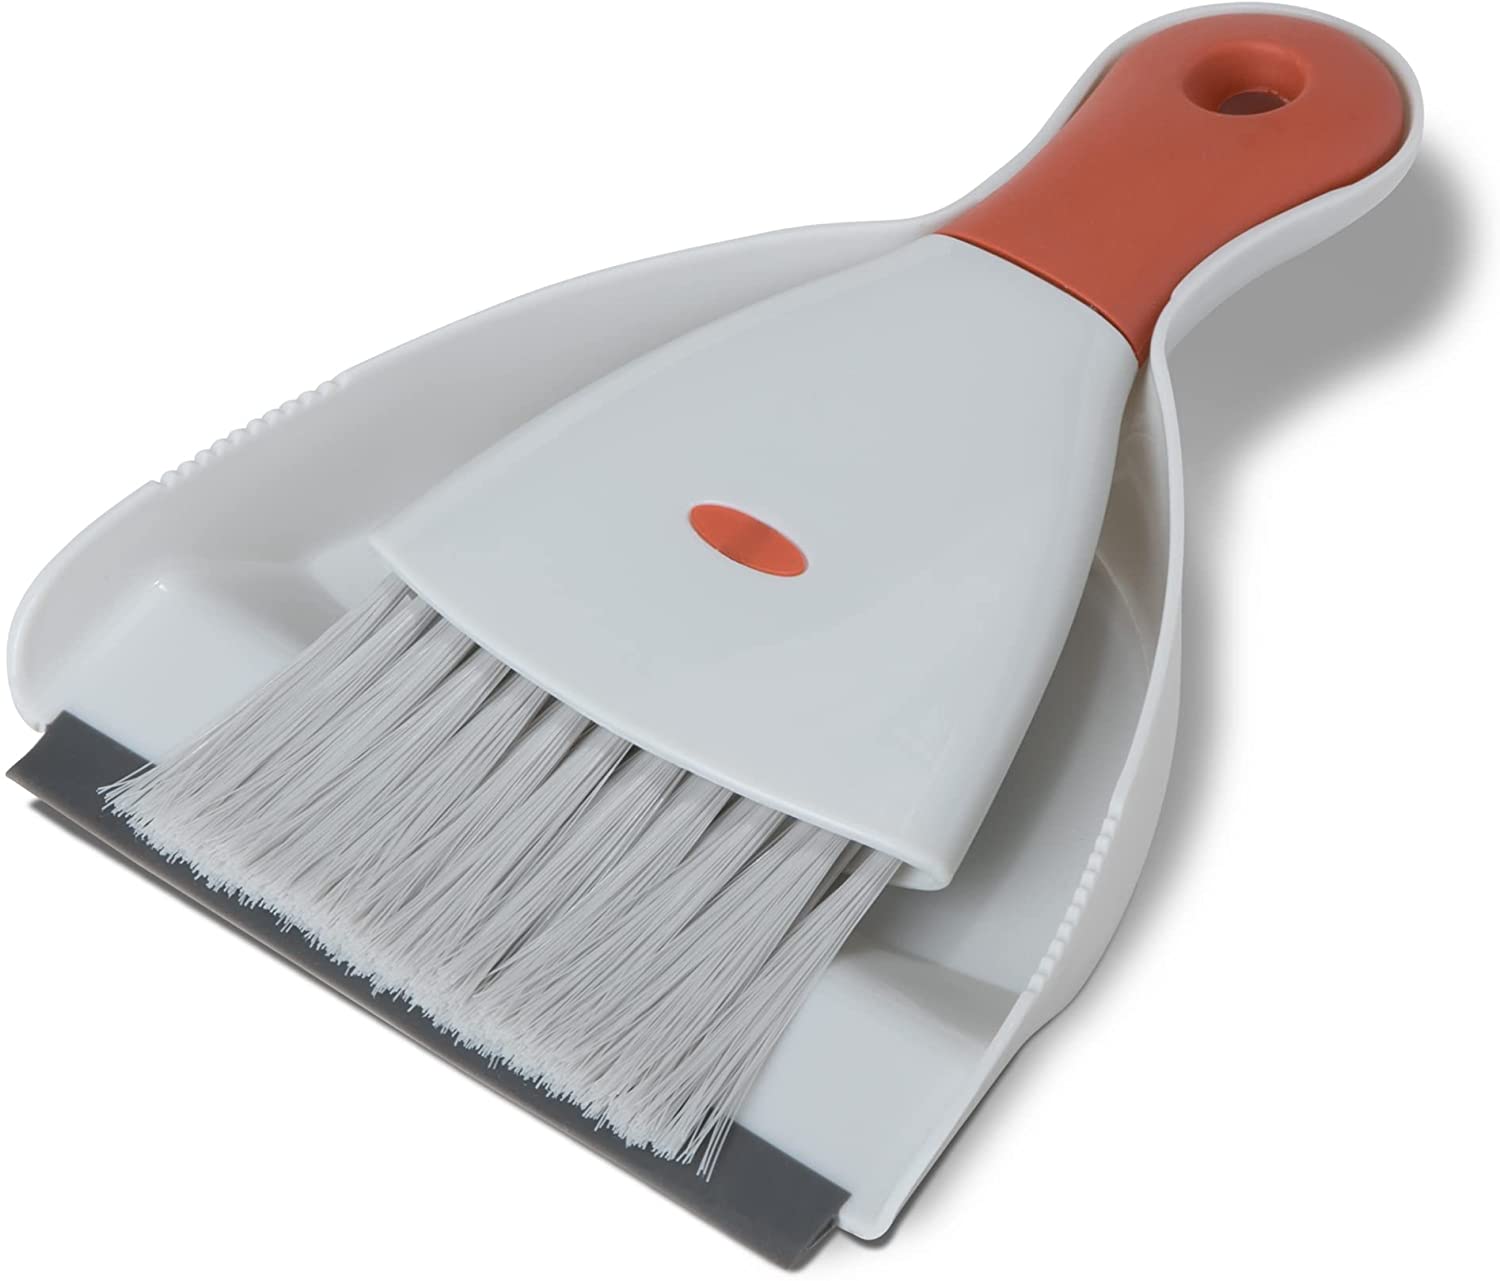 http://www.shopsmartdesign.com/cdn/shop/products/dustpan-and-brush-set-smart-design-cleaning-7001321-incrementing-number-982903.jpg?v=1679343084